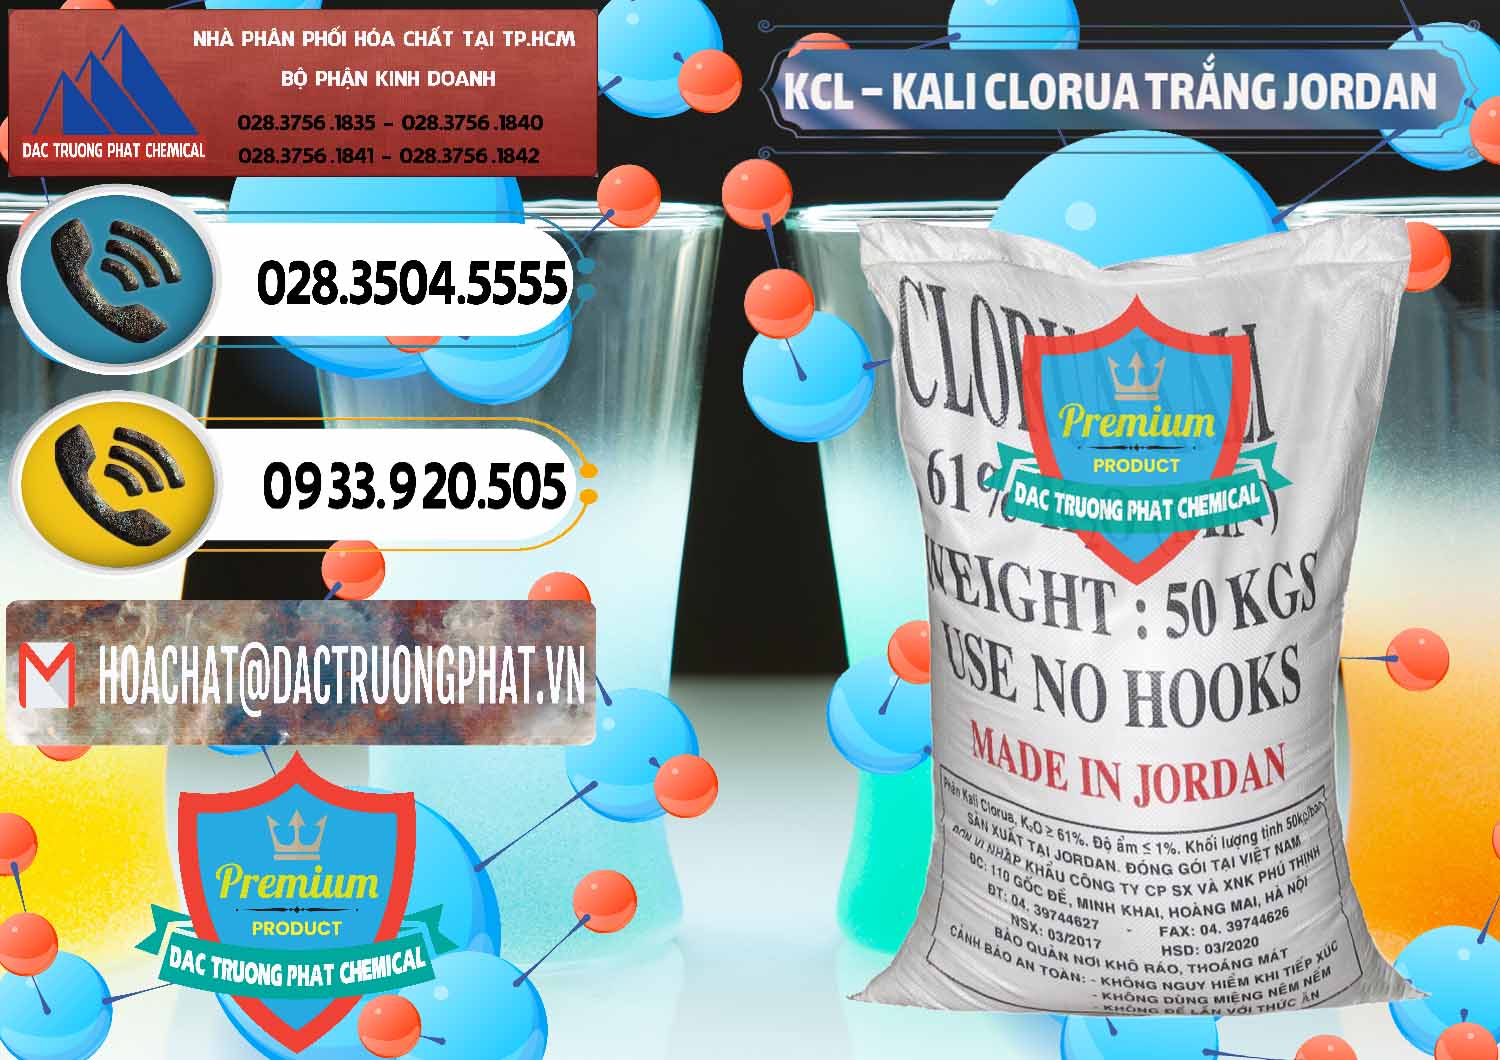 Công ty chuyên cung cấp ( bán ) KCL – Kali Clorua Trắng Jordan - 0088 - Công ty bán & cung cấp hóa chất tại TP.HCM - hoachatdetnhuom.vn